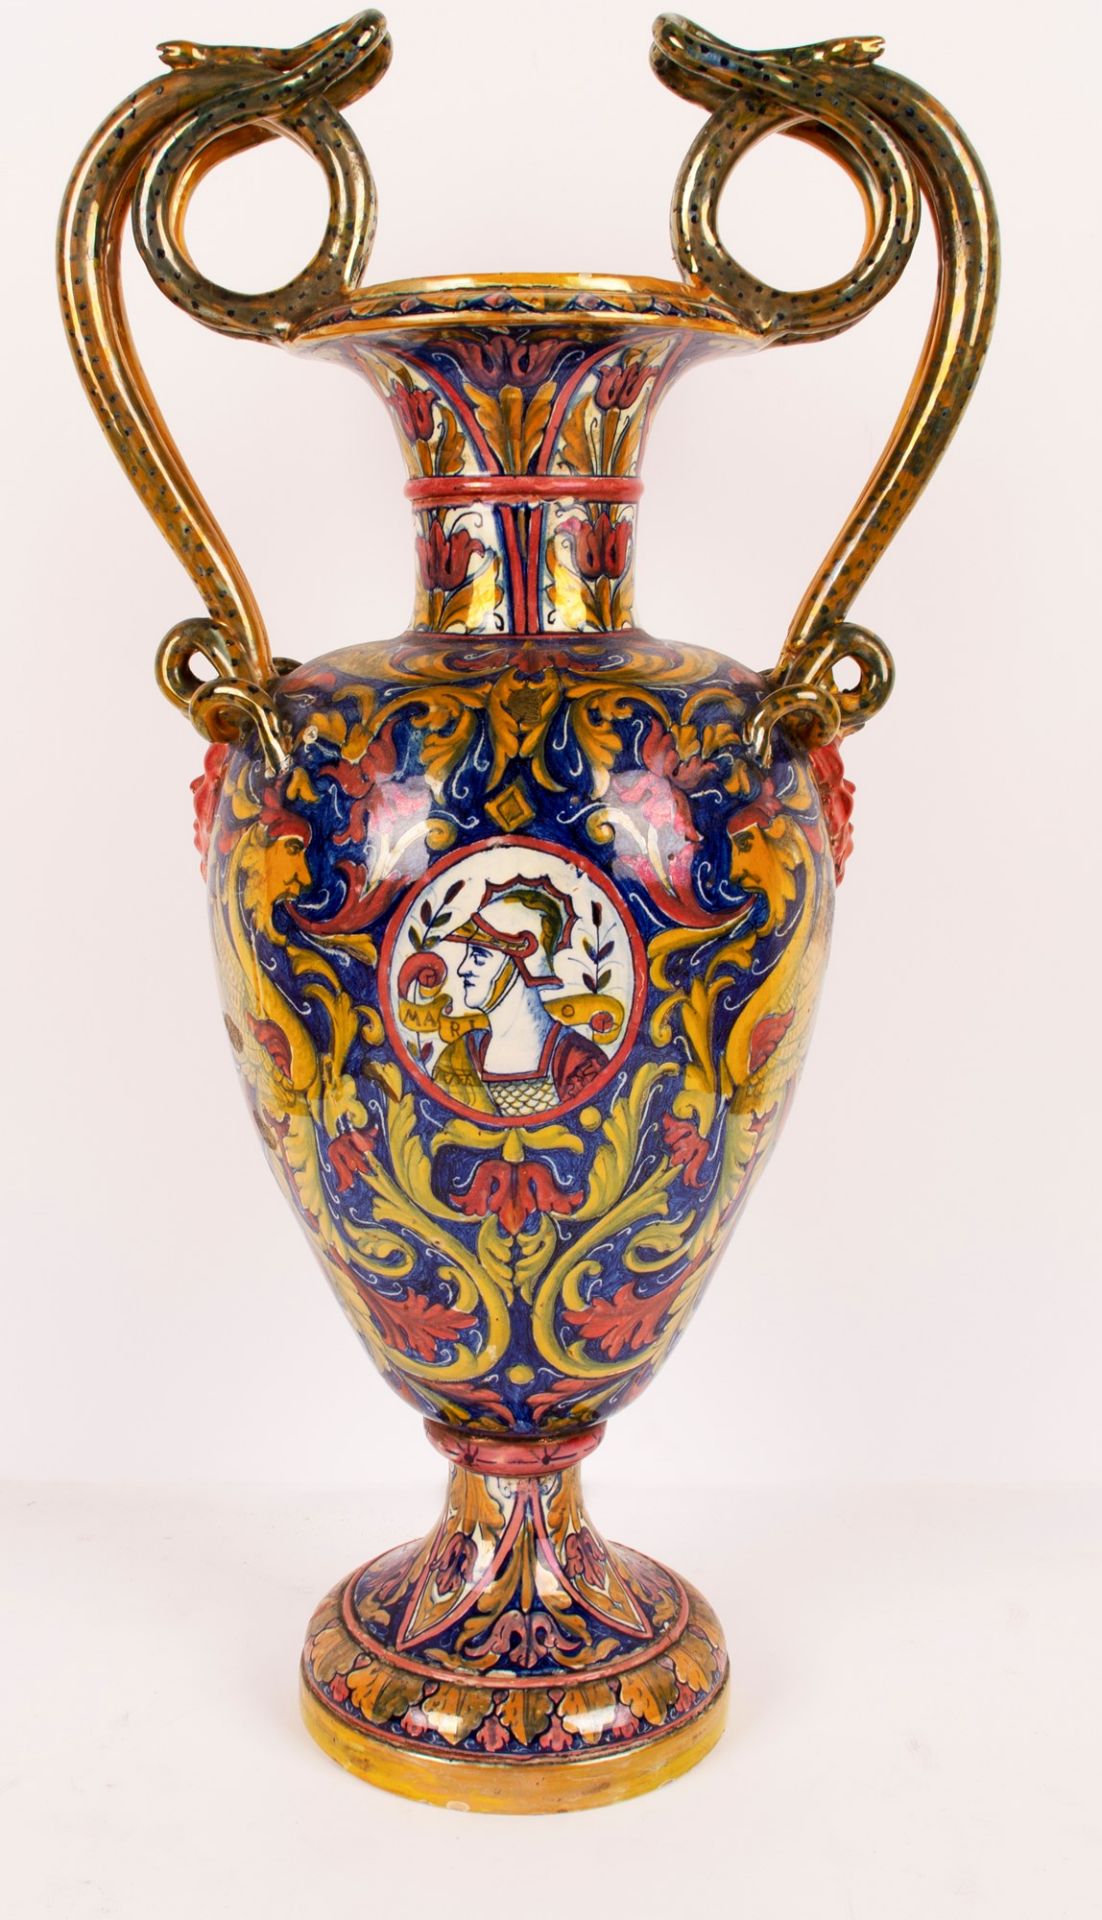 Grande vaso a lustro rosso e oro. Manifattura Gualdo Tadino, inizi del XX secolo. - Image 4 of 6